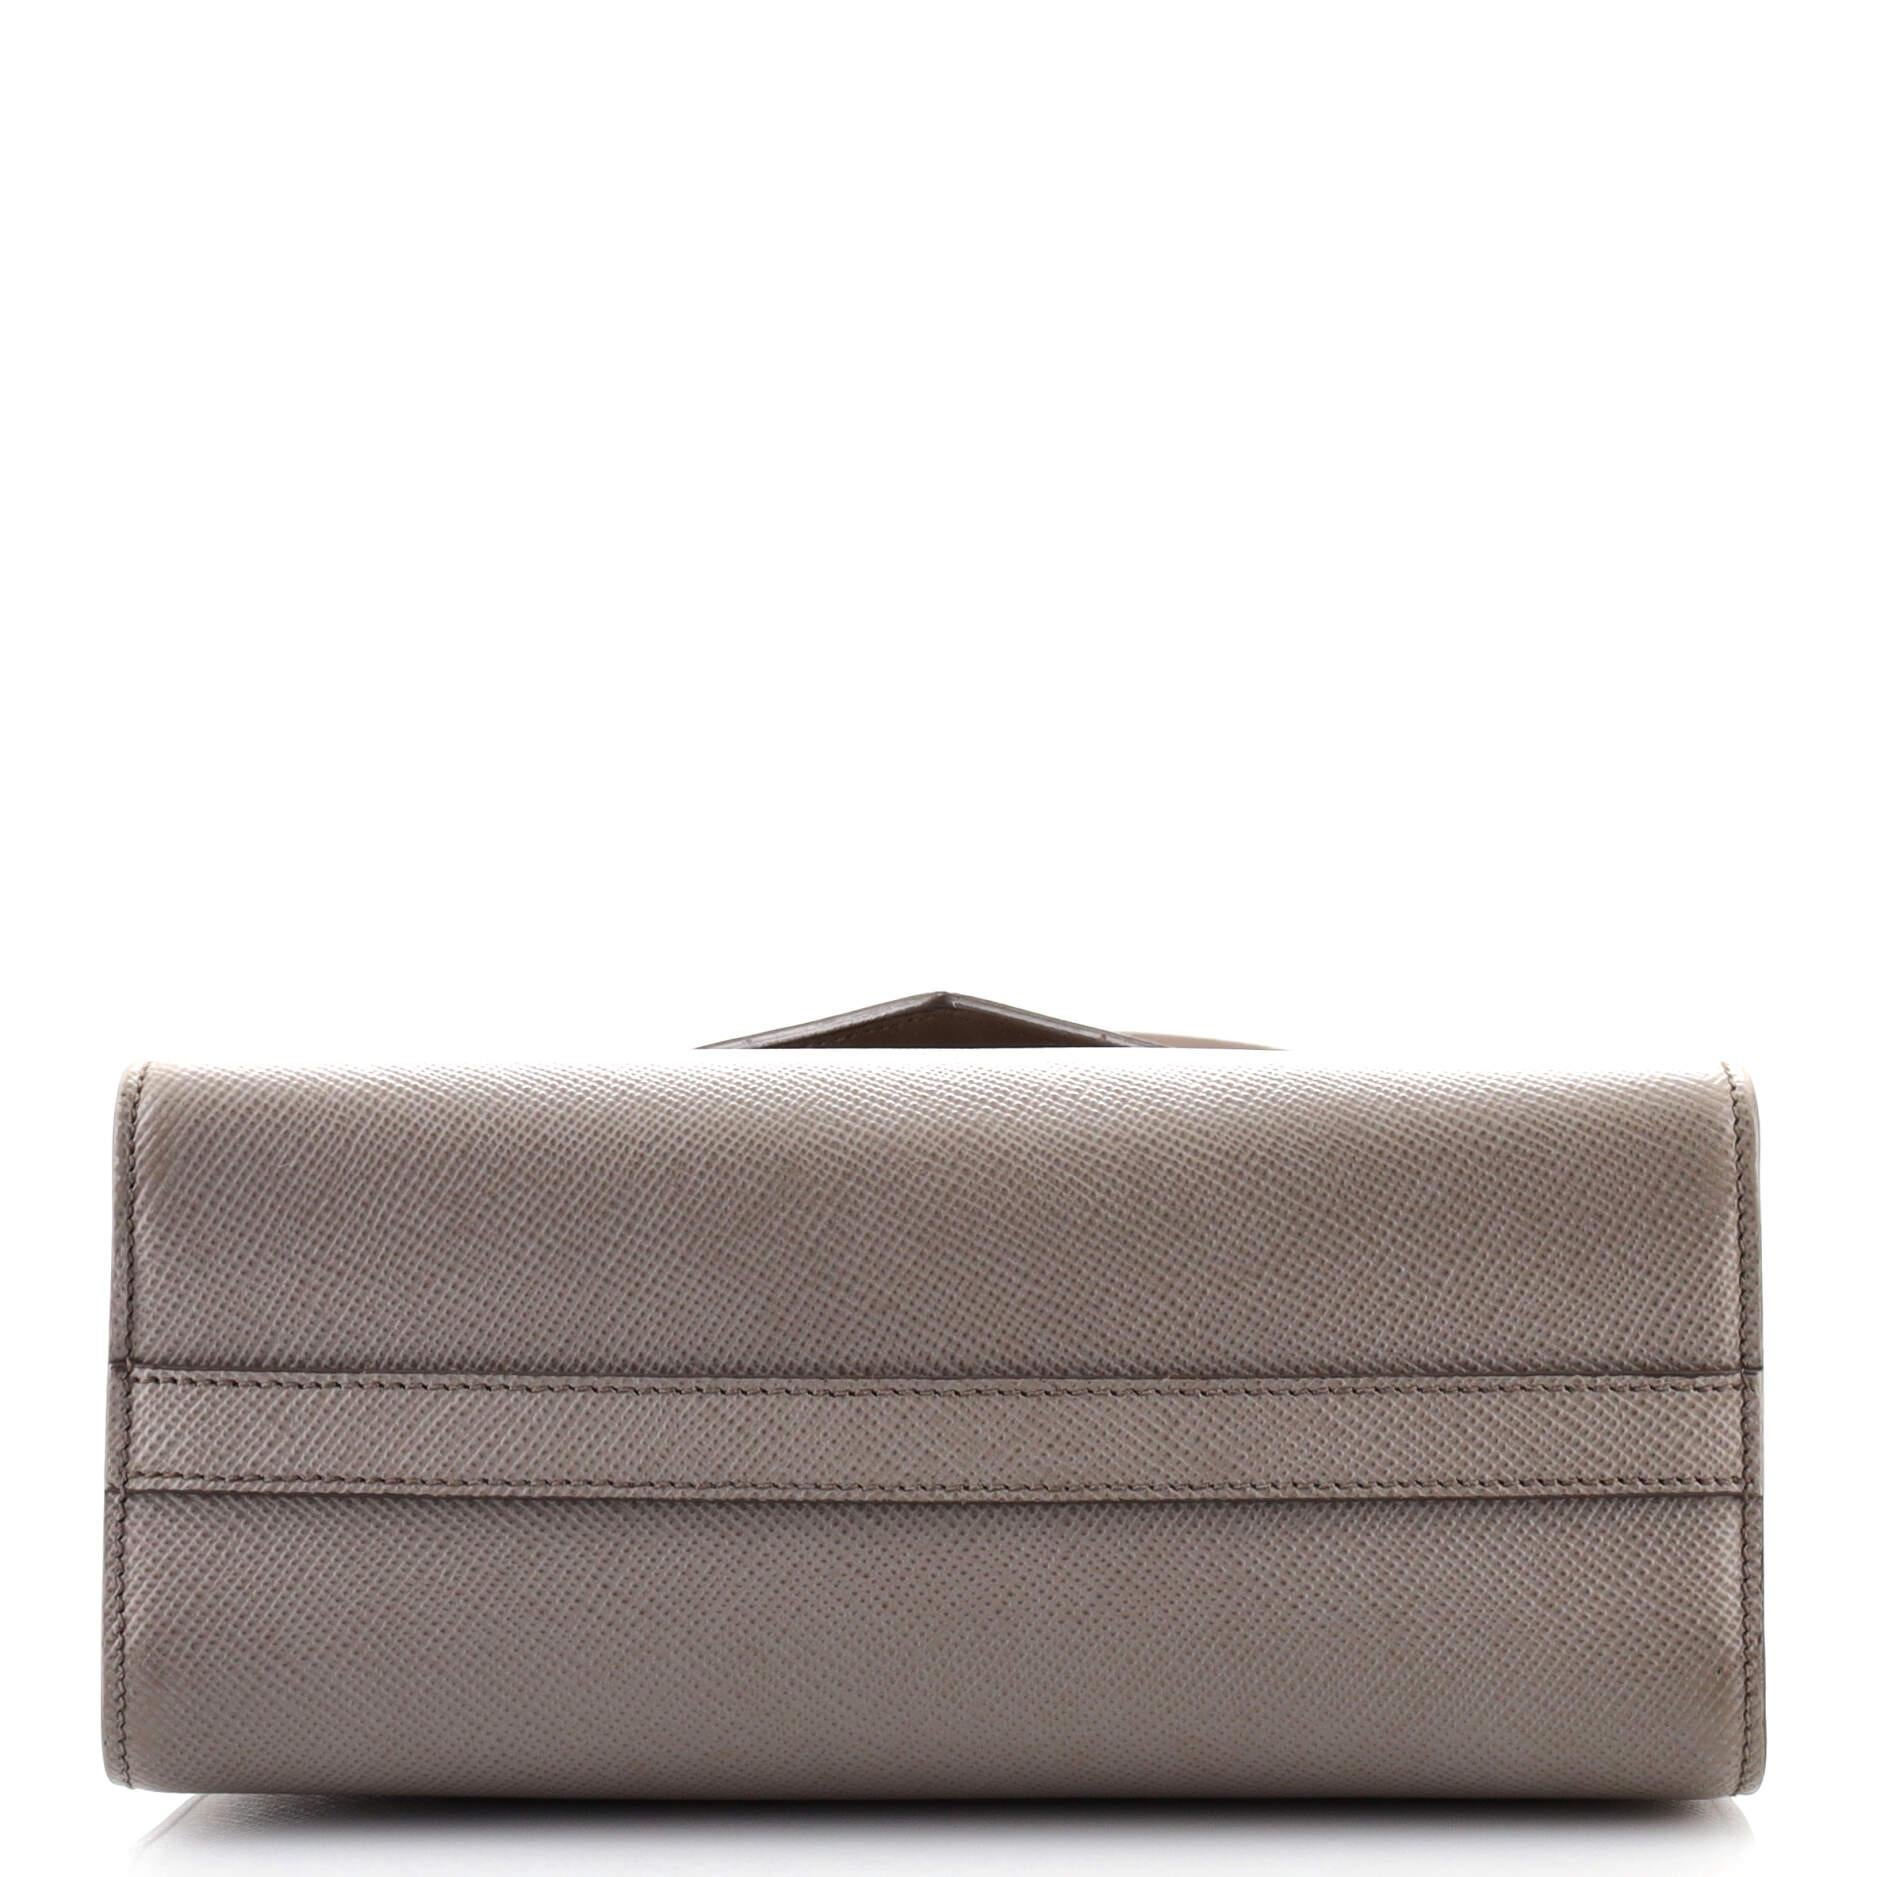 Gray Prada Monochrome Shoulder Bag Saffiano Leather Medium